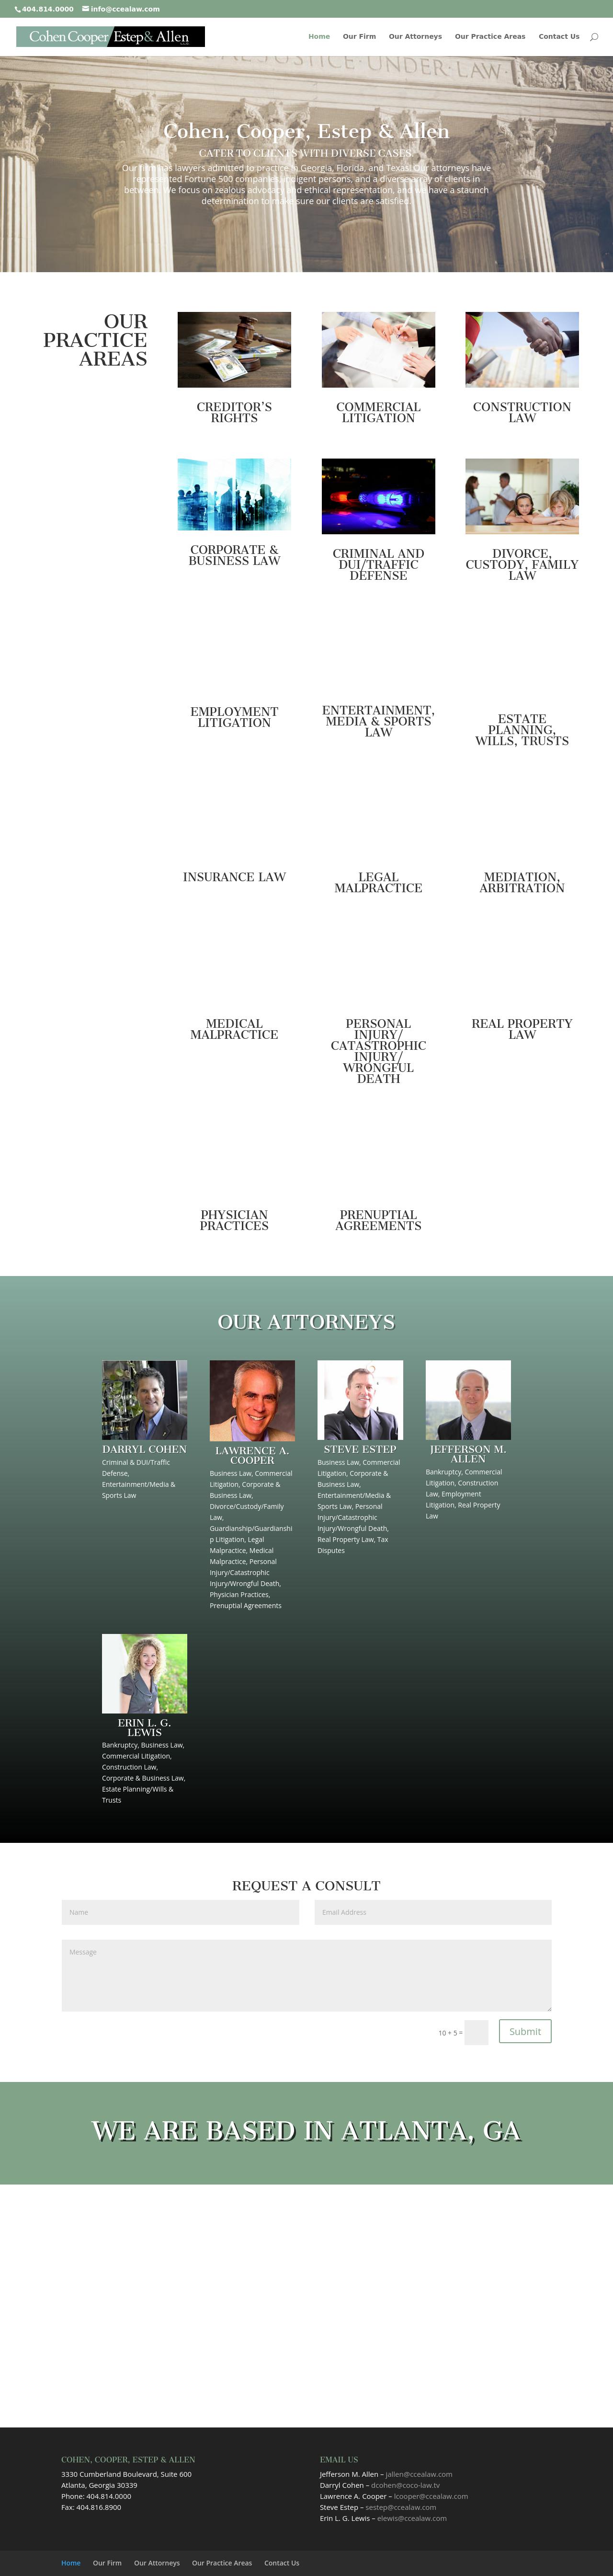 Cohen, Cooper, Estep & Allen, LLC - Atlanta GA Lawyers